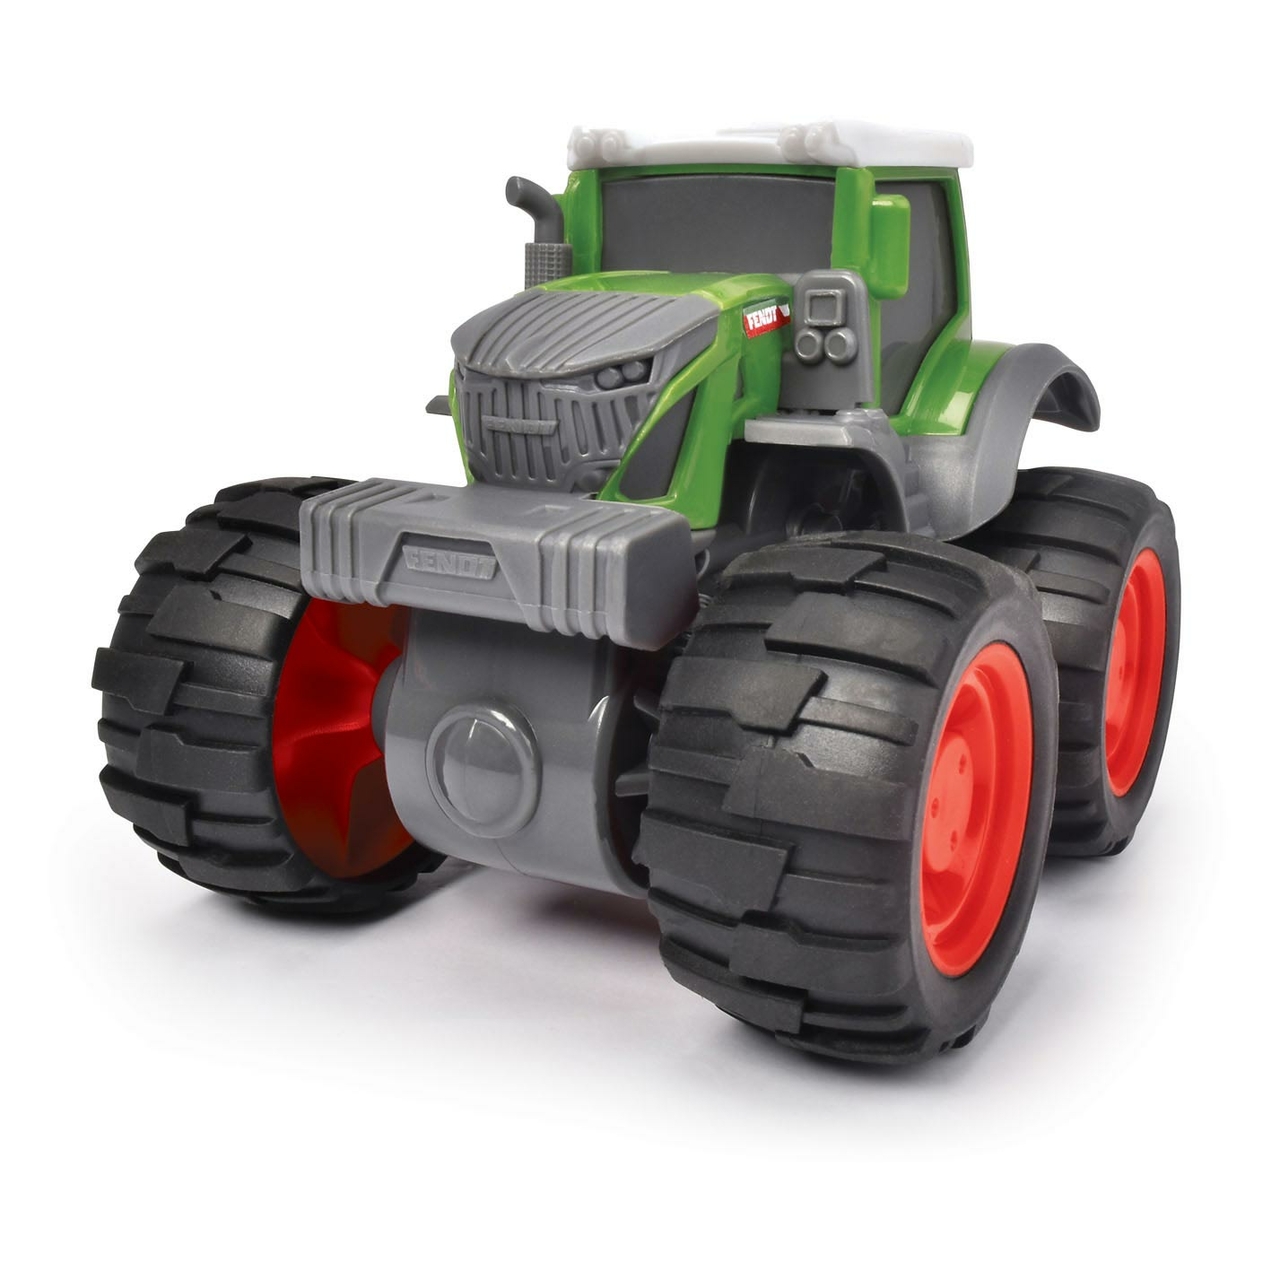 Toeschouwer Presentator premie Dickie Fendt Monster Tractor - Het Speelgoedpaleis